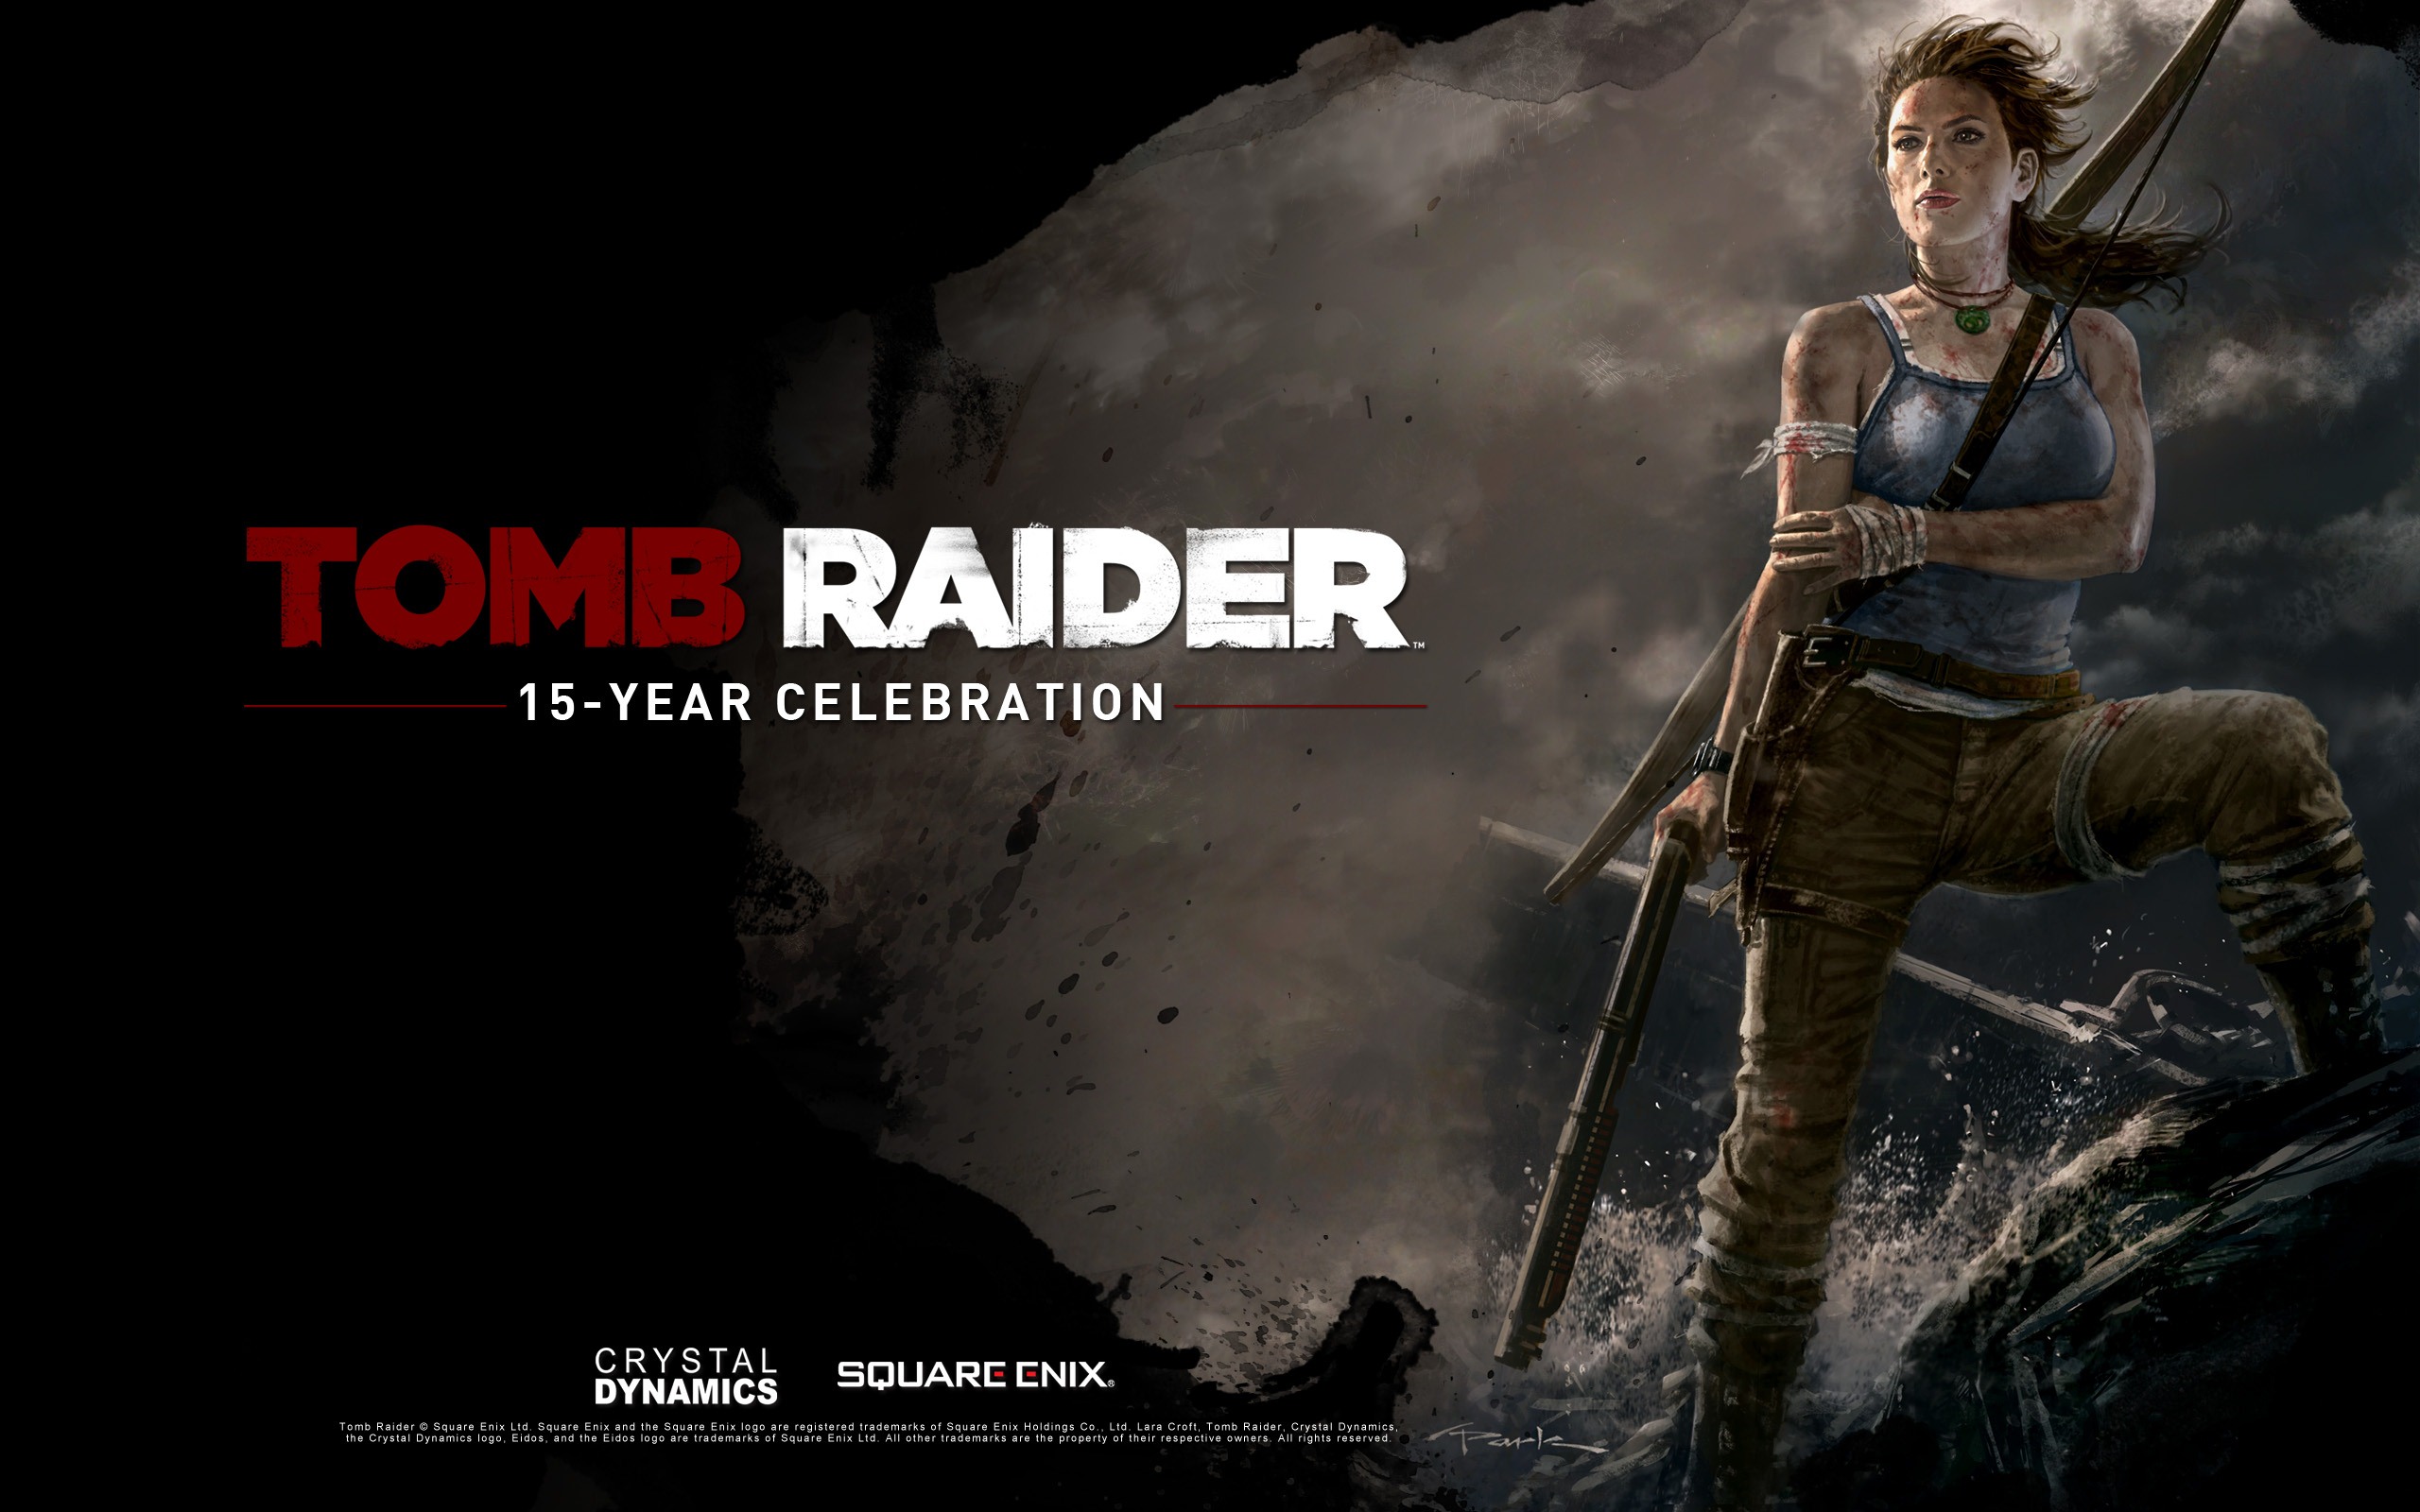 Tomb Raider 15-Year Celebration 古墓丽影15周年纪念版 高清壁纸1 - 2560x1600